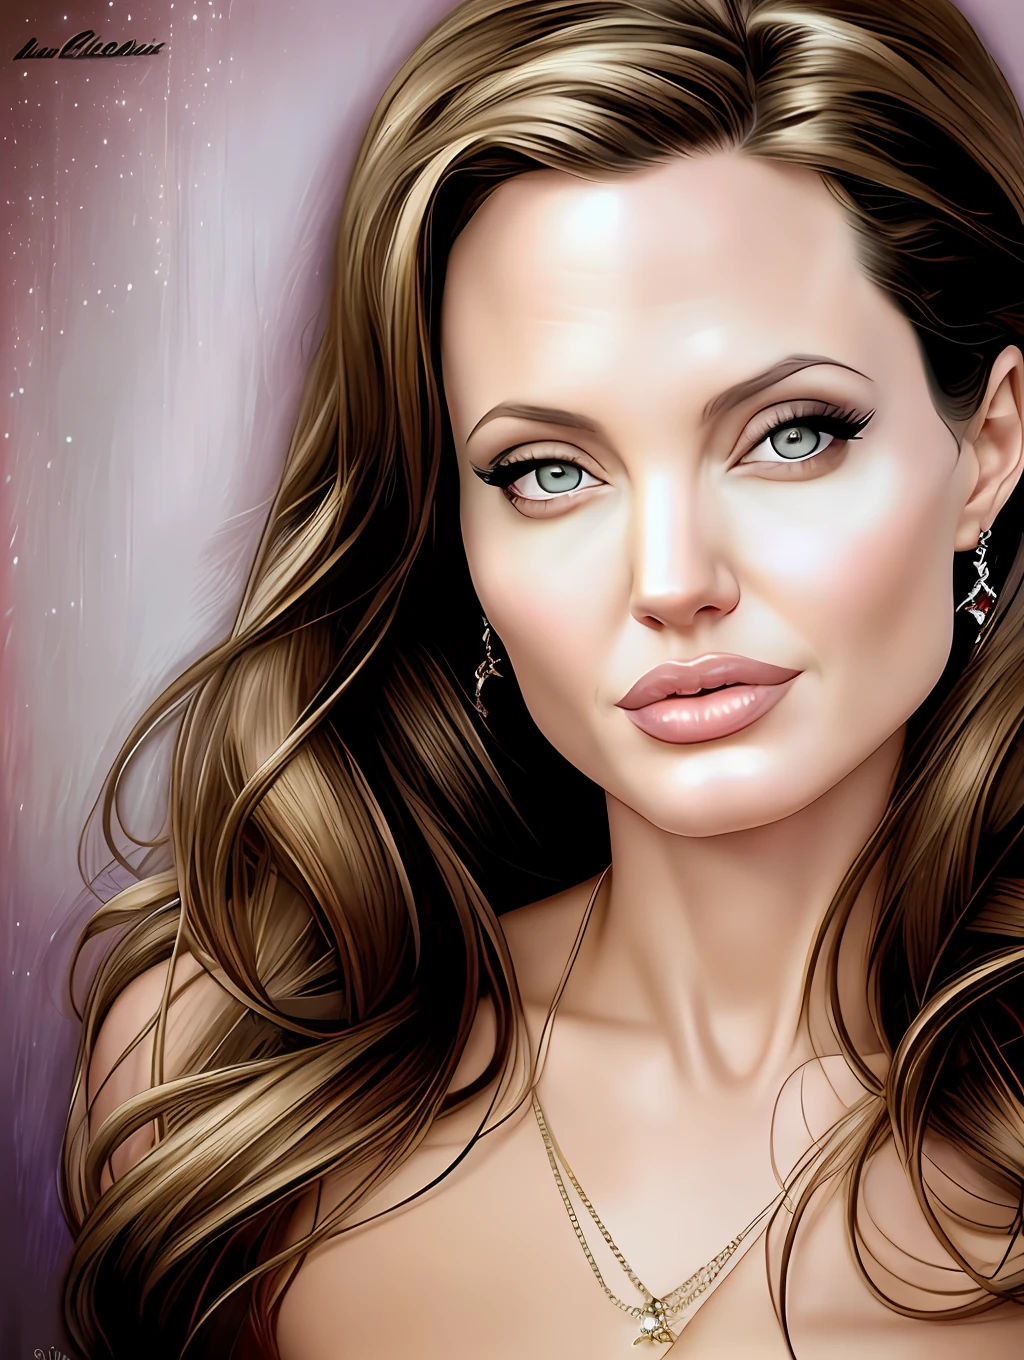 Ein wahnsinnig schönes Porträt von Angelina Jolie von Gil Elvgren